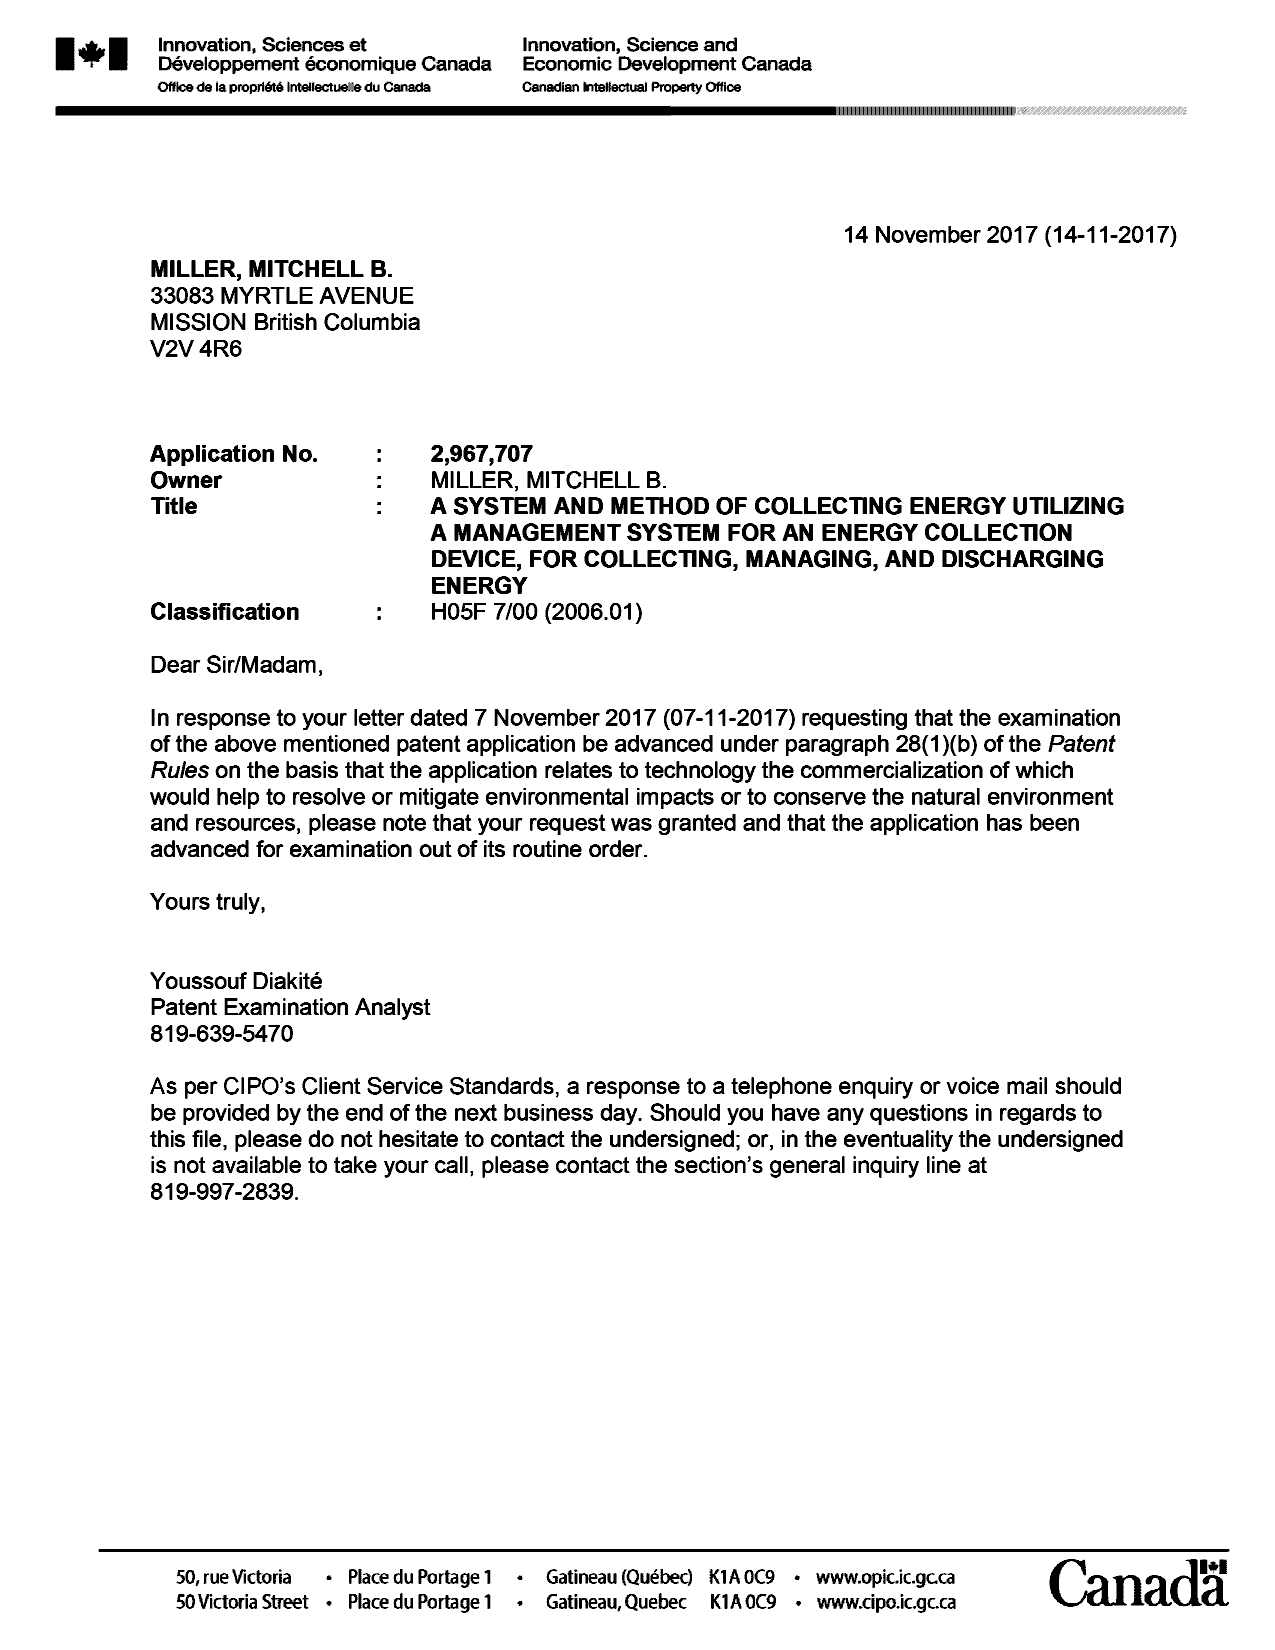 Document de brevet canadien 2967707. Ordonnance spéciale - Verte acceptée 20161214. Image 1 de 1